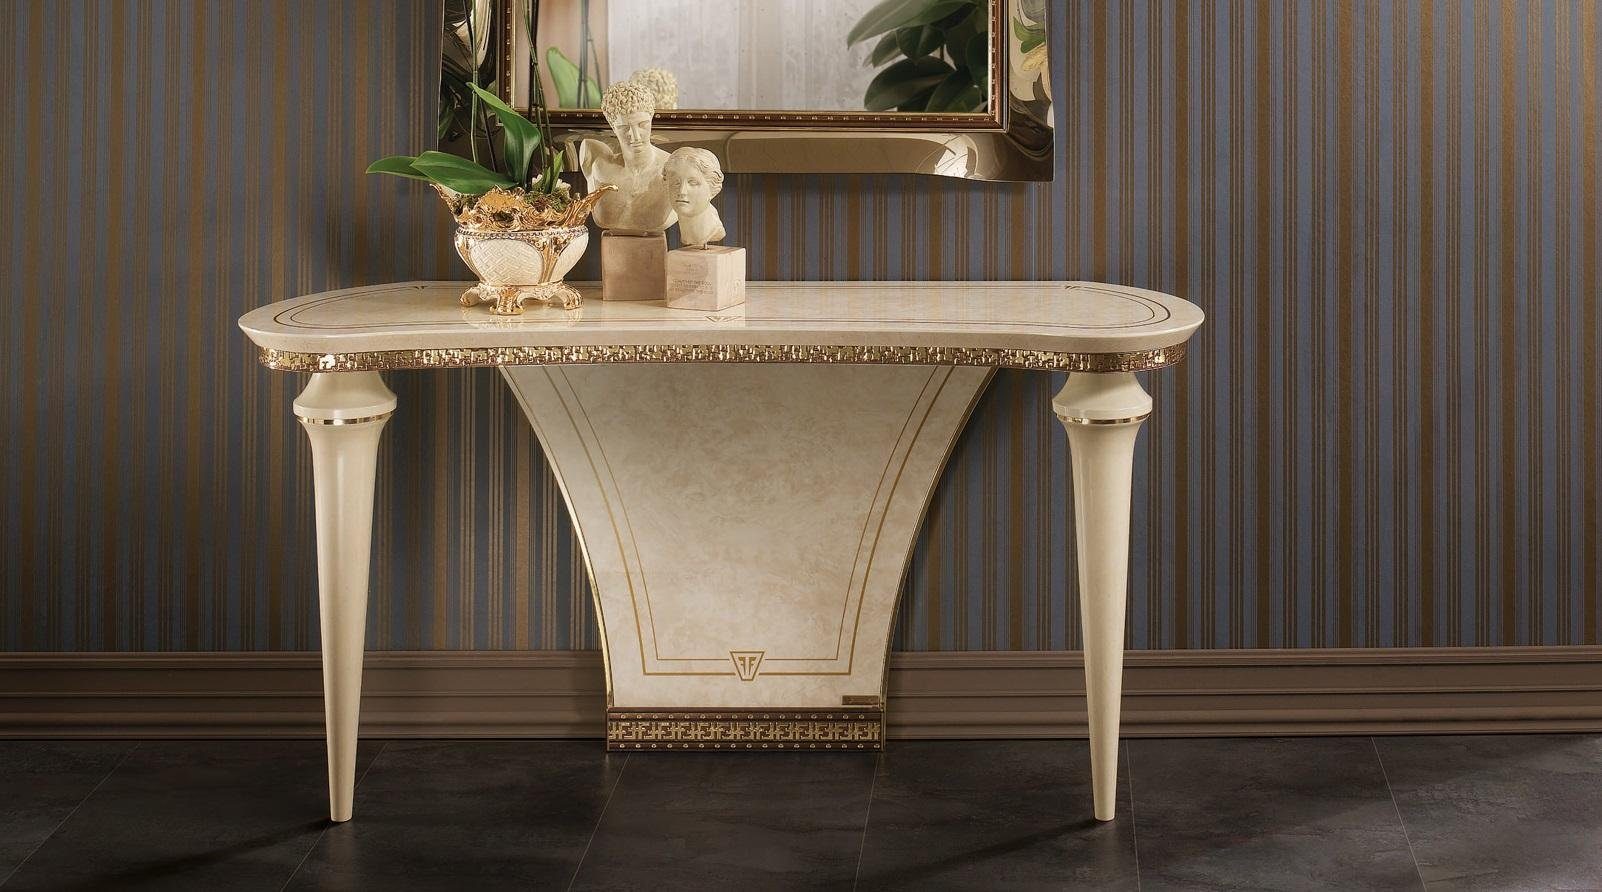 JVmoebel Konsolentisch Italienische Möbel Beistelltisch Konsolentisch Konsole Tisch Wohnzimmertisch